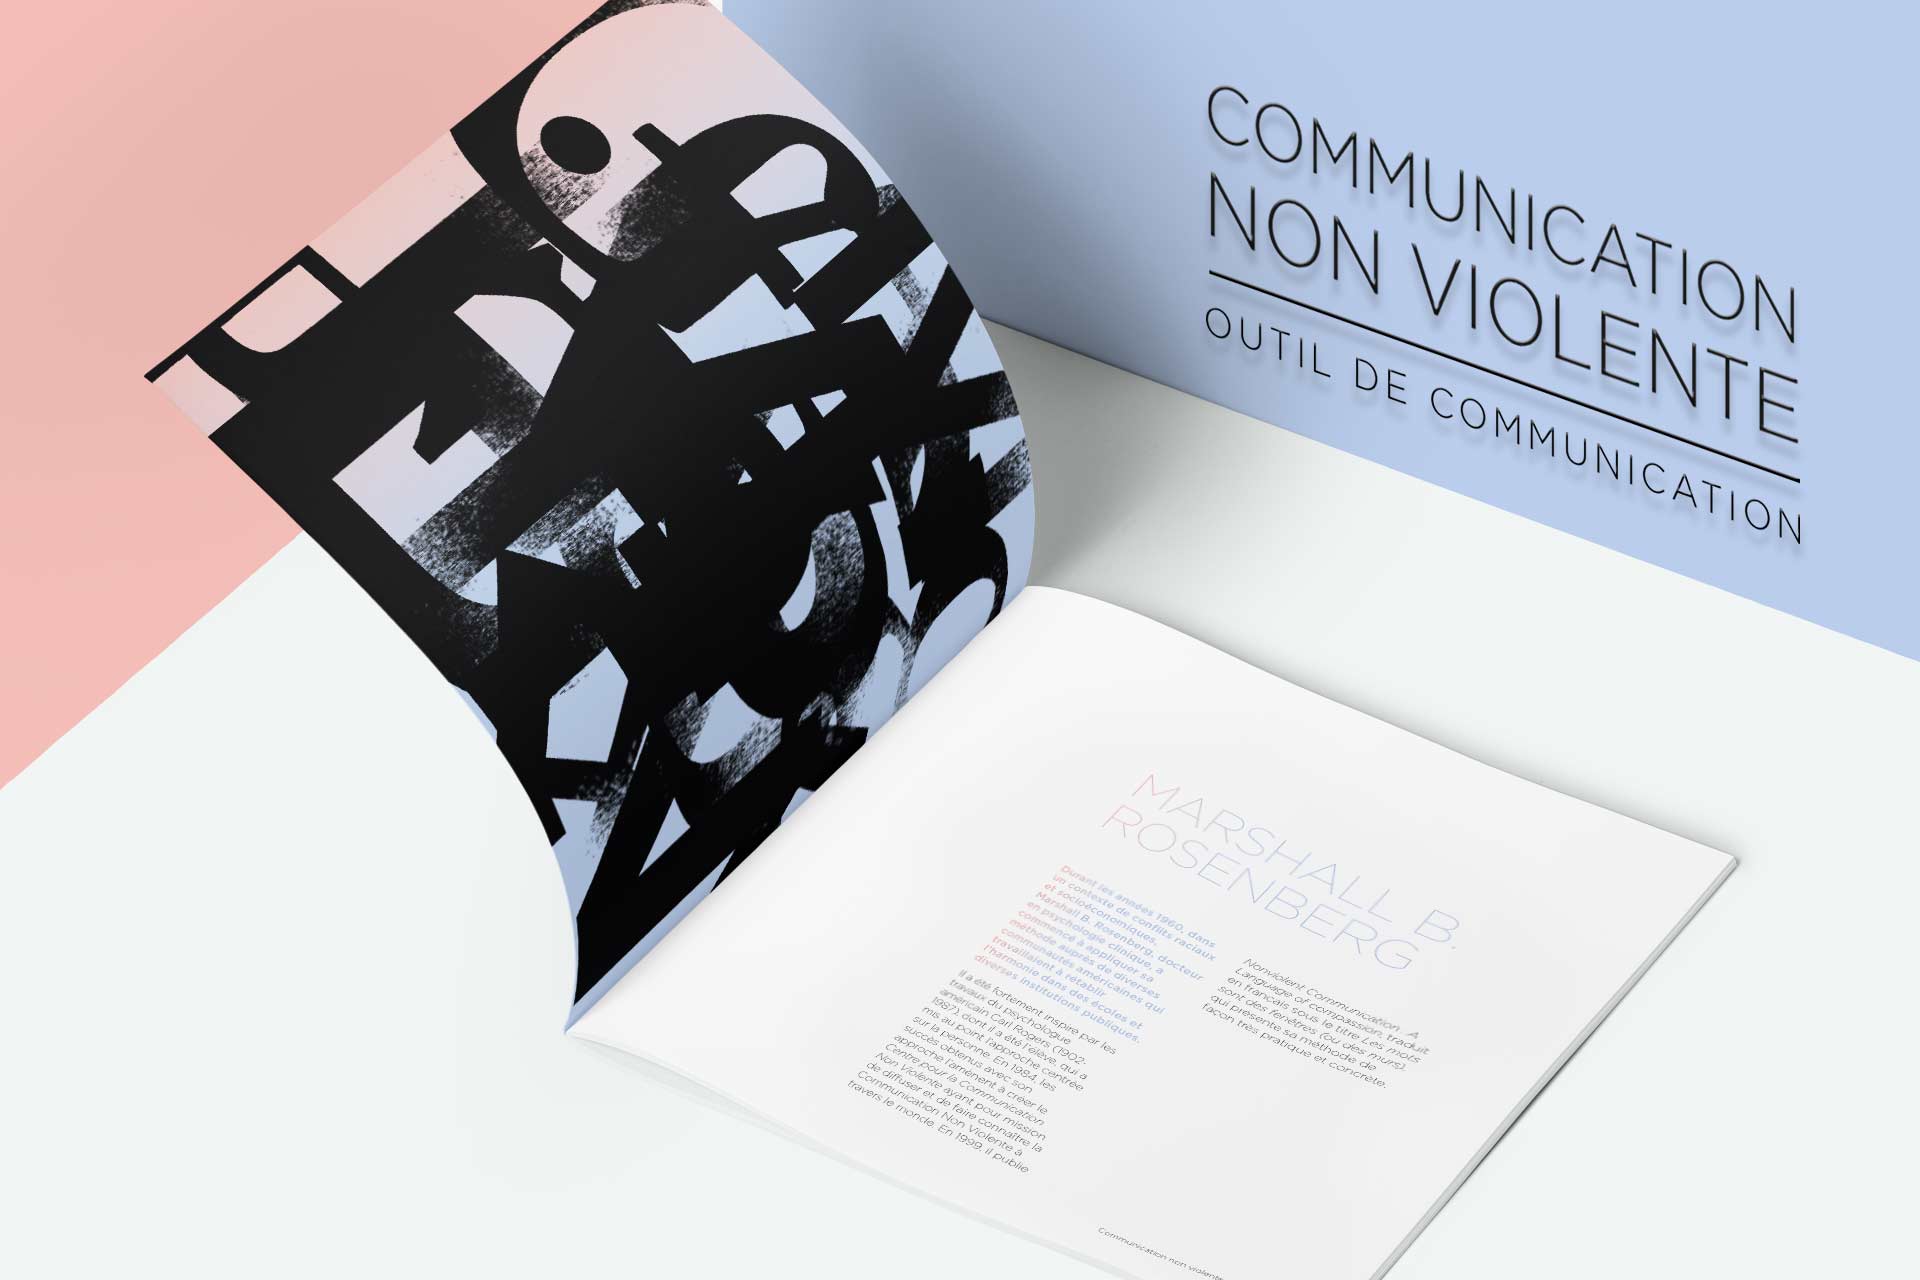 Couverture projet communication non violente